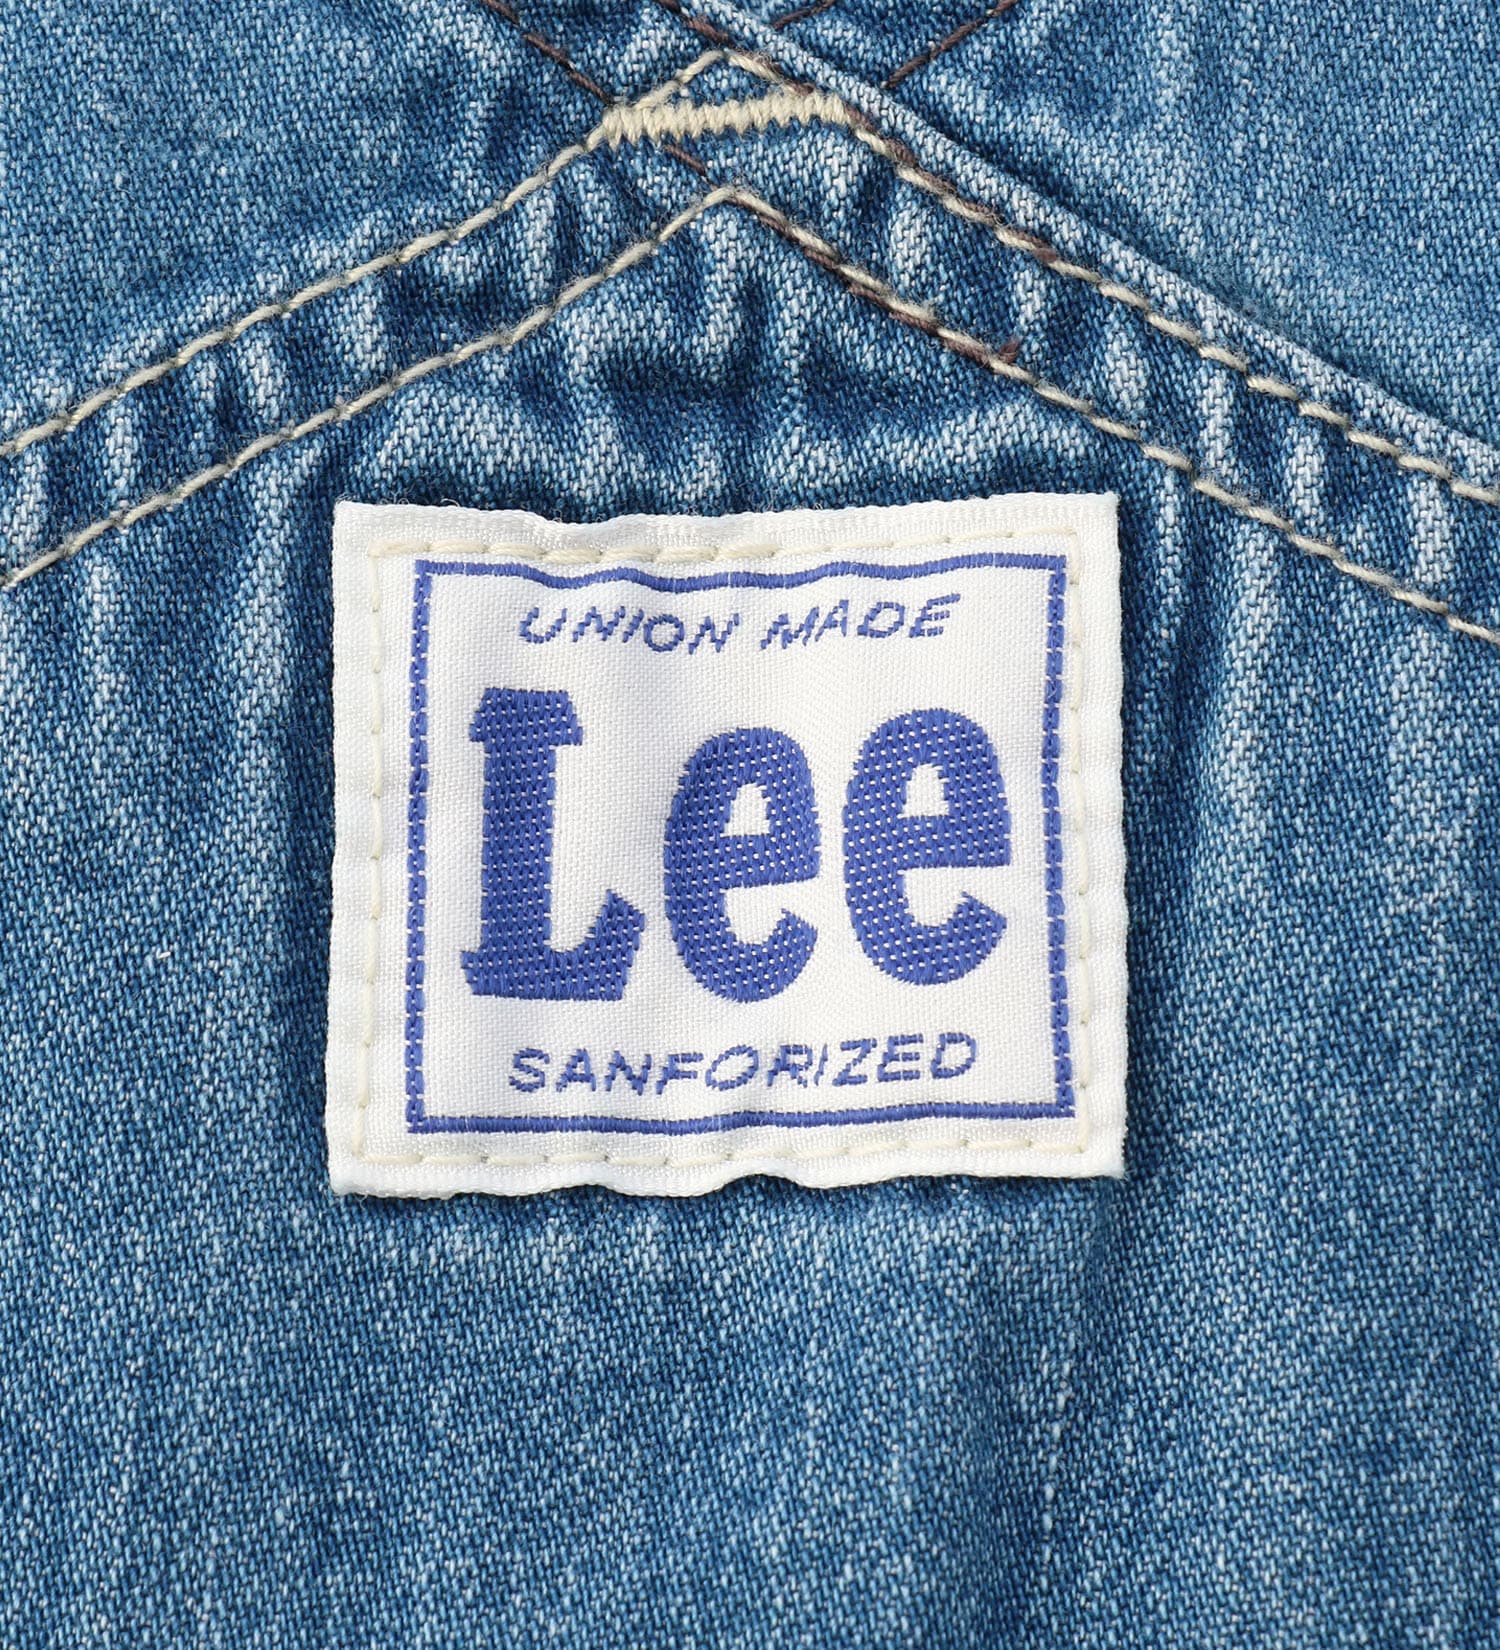 Lee(リー)の【130-160cm】キッズ オーバーオール|オールインワン/サロペット/オーバーオール/キッズ|中色ブルー